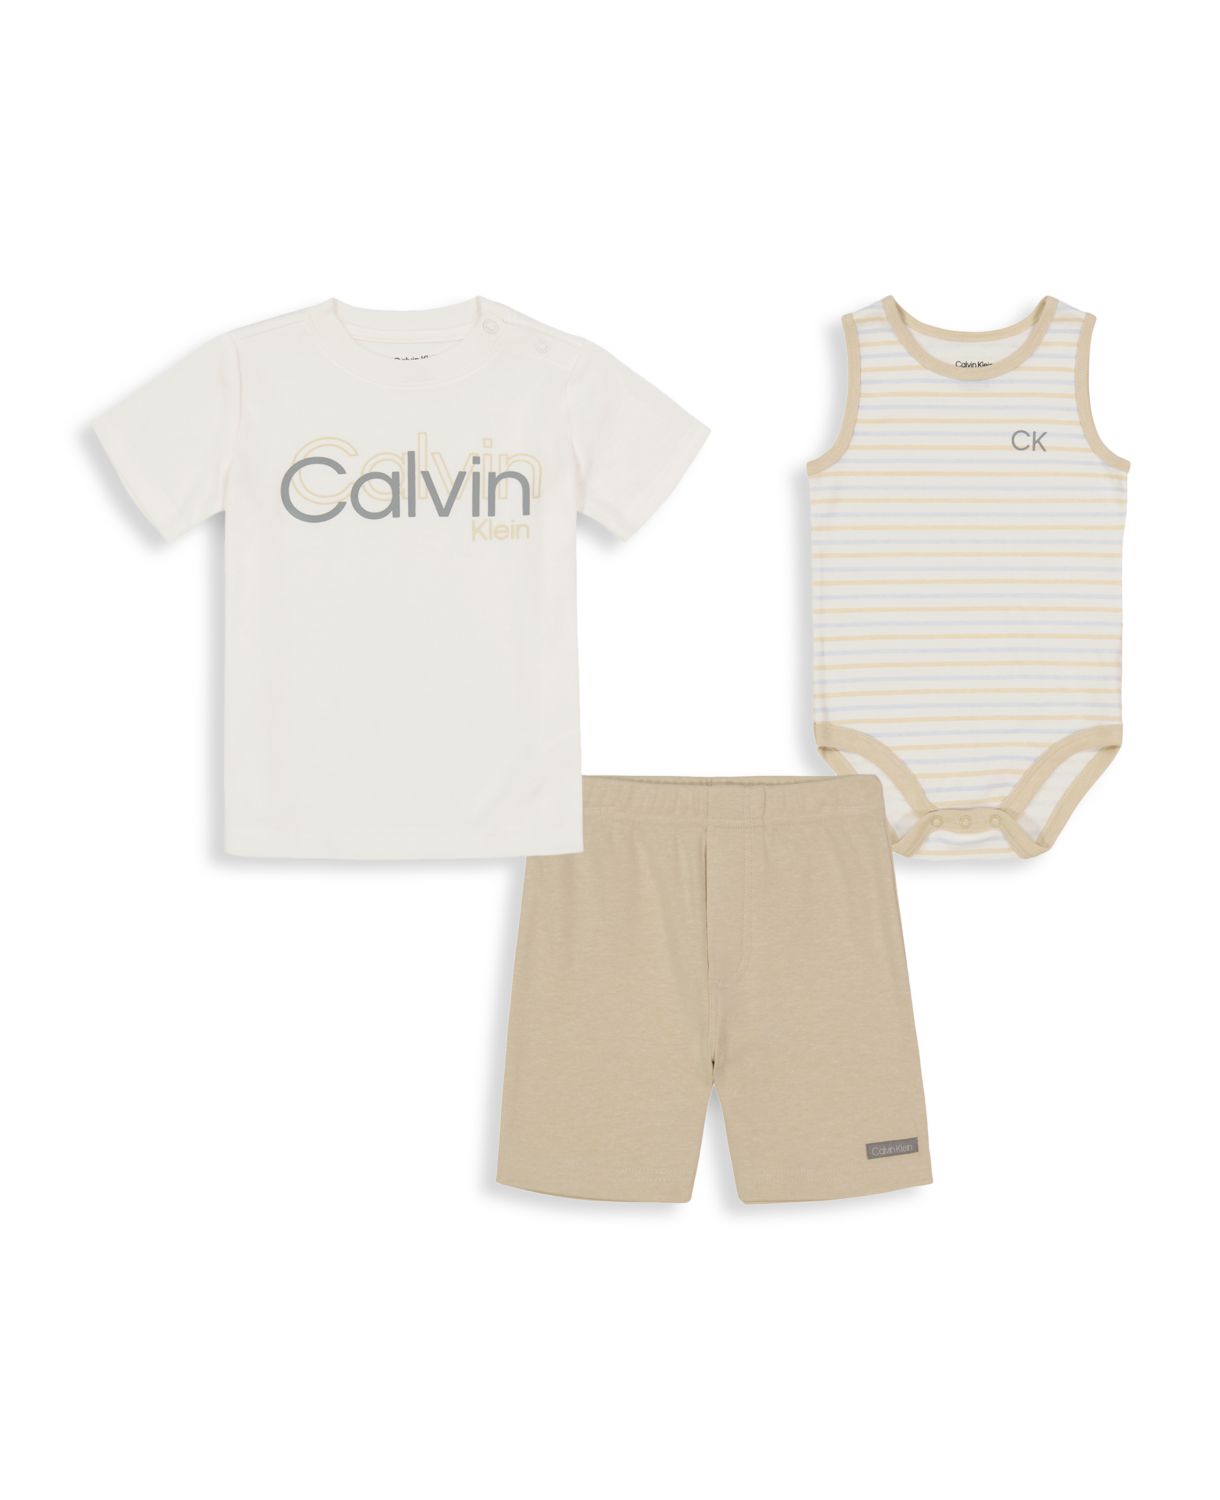 Боди, футболка и футболка с логотипом для мальчика из трех частей Комплект шорт Calvin Klein